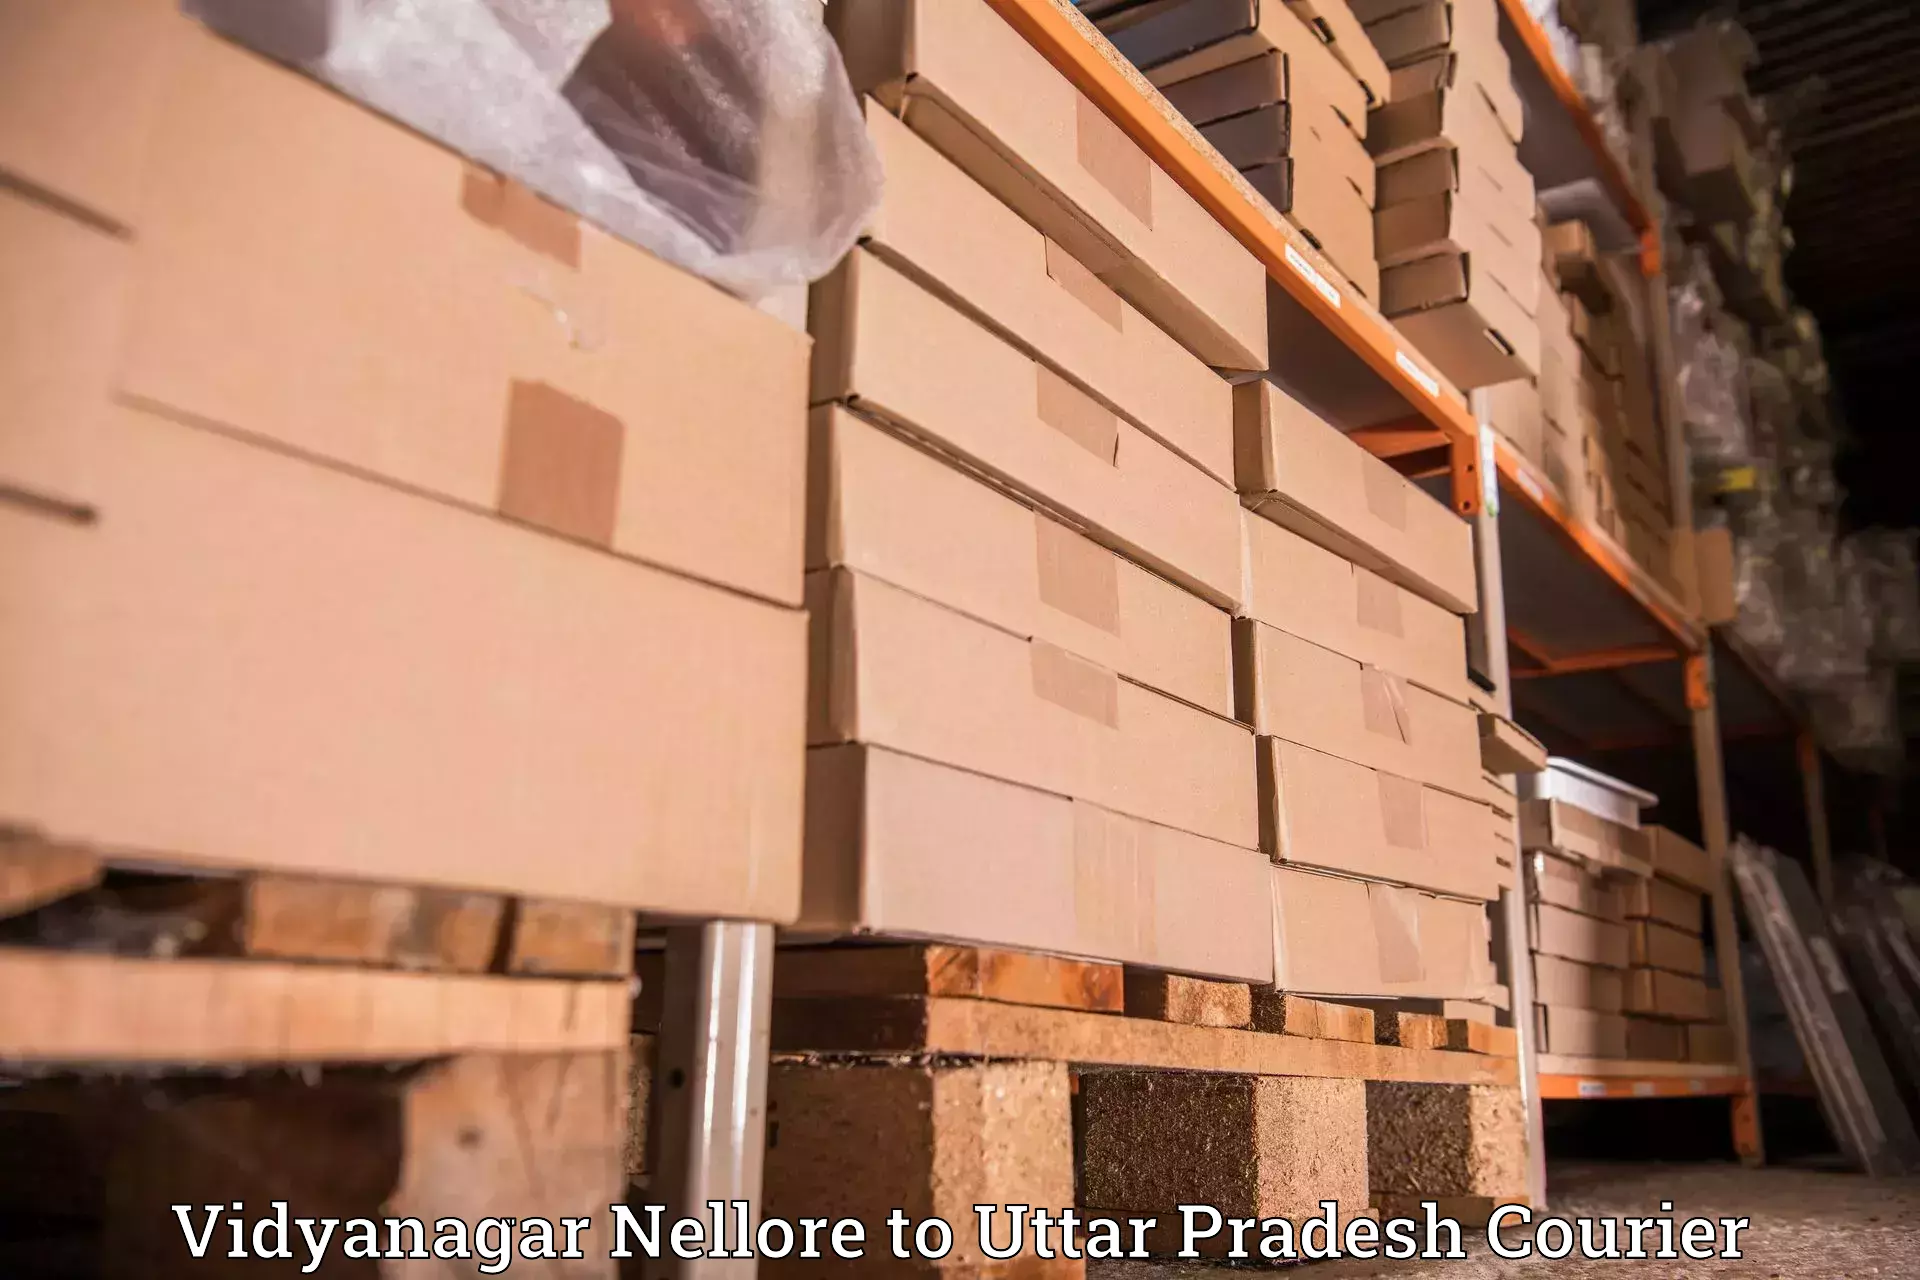 24/7 courier service Vidyanagar Nellore to Meerut